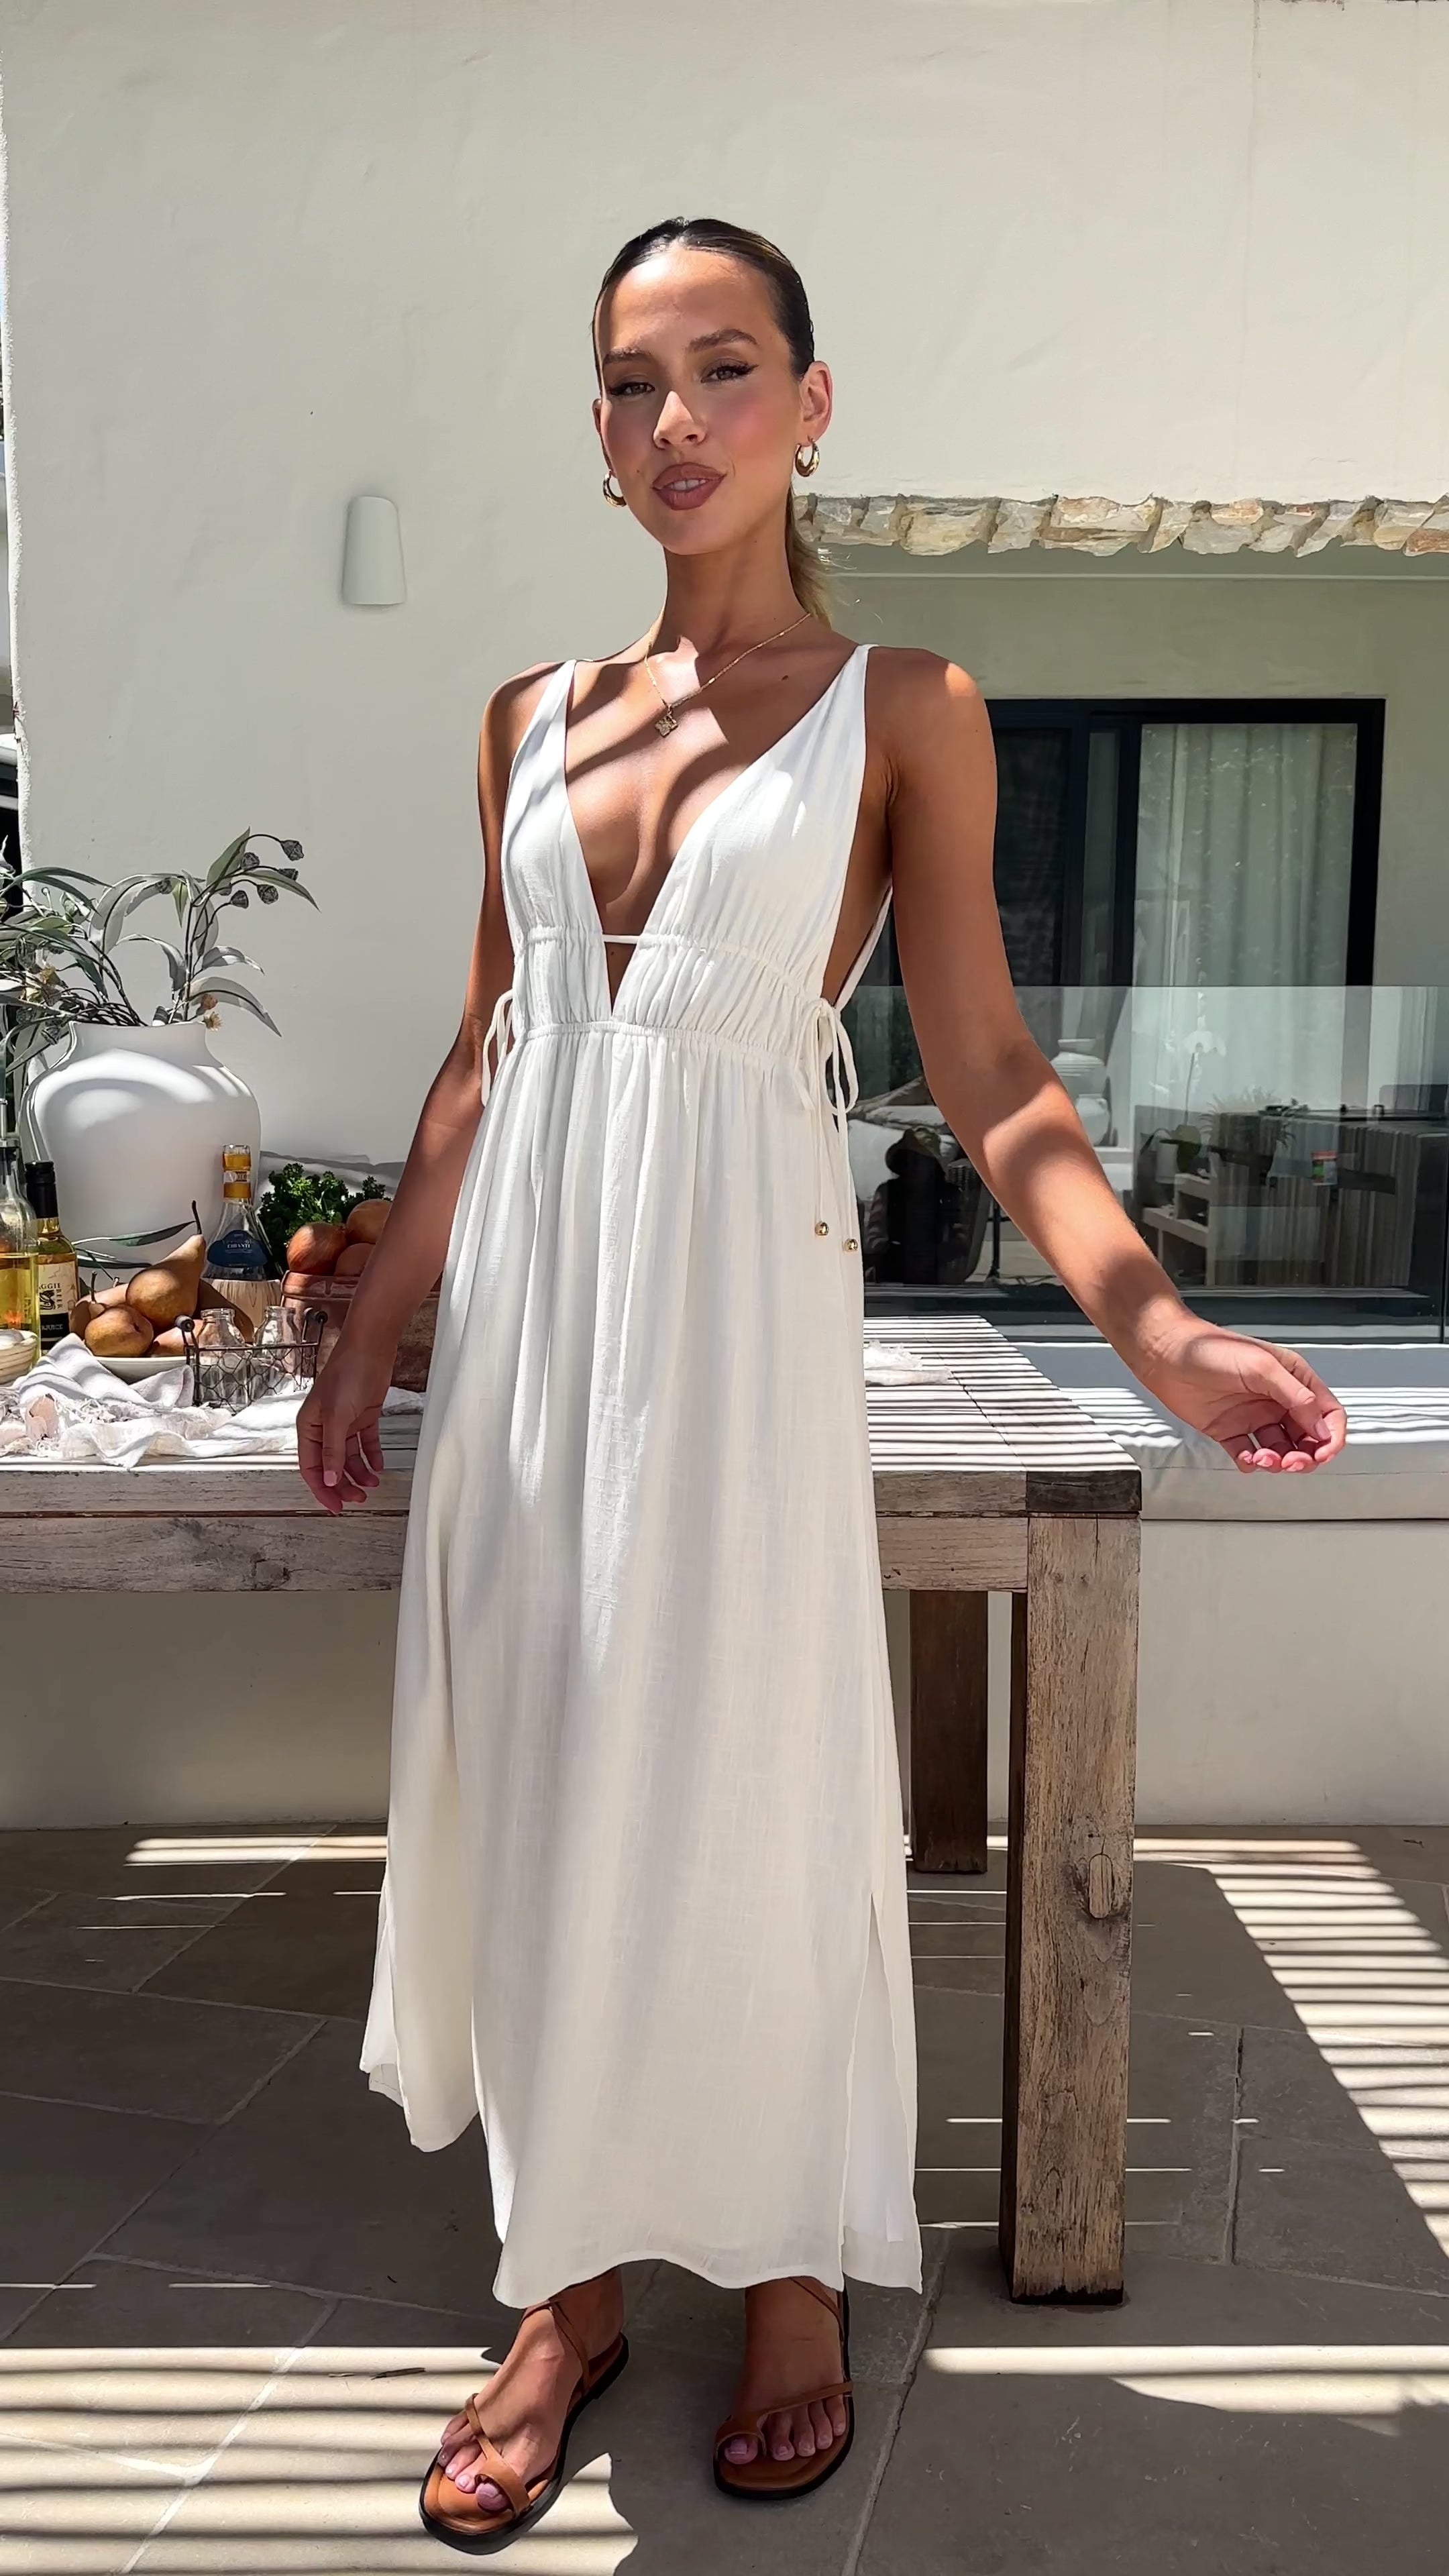 Solita Maxi Dress - White